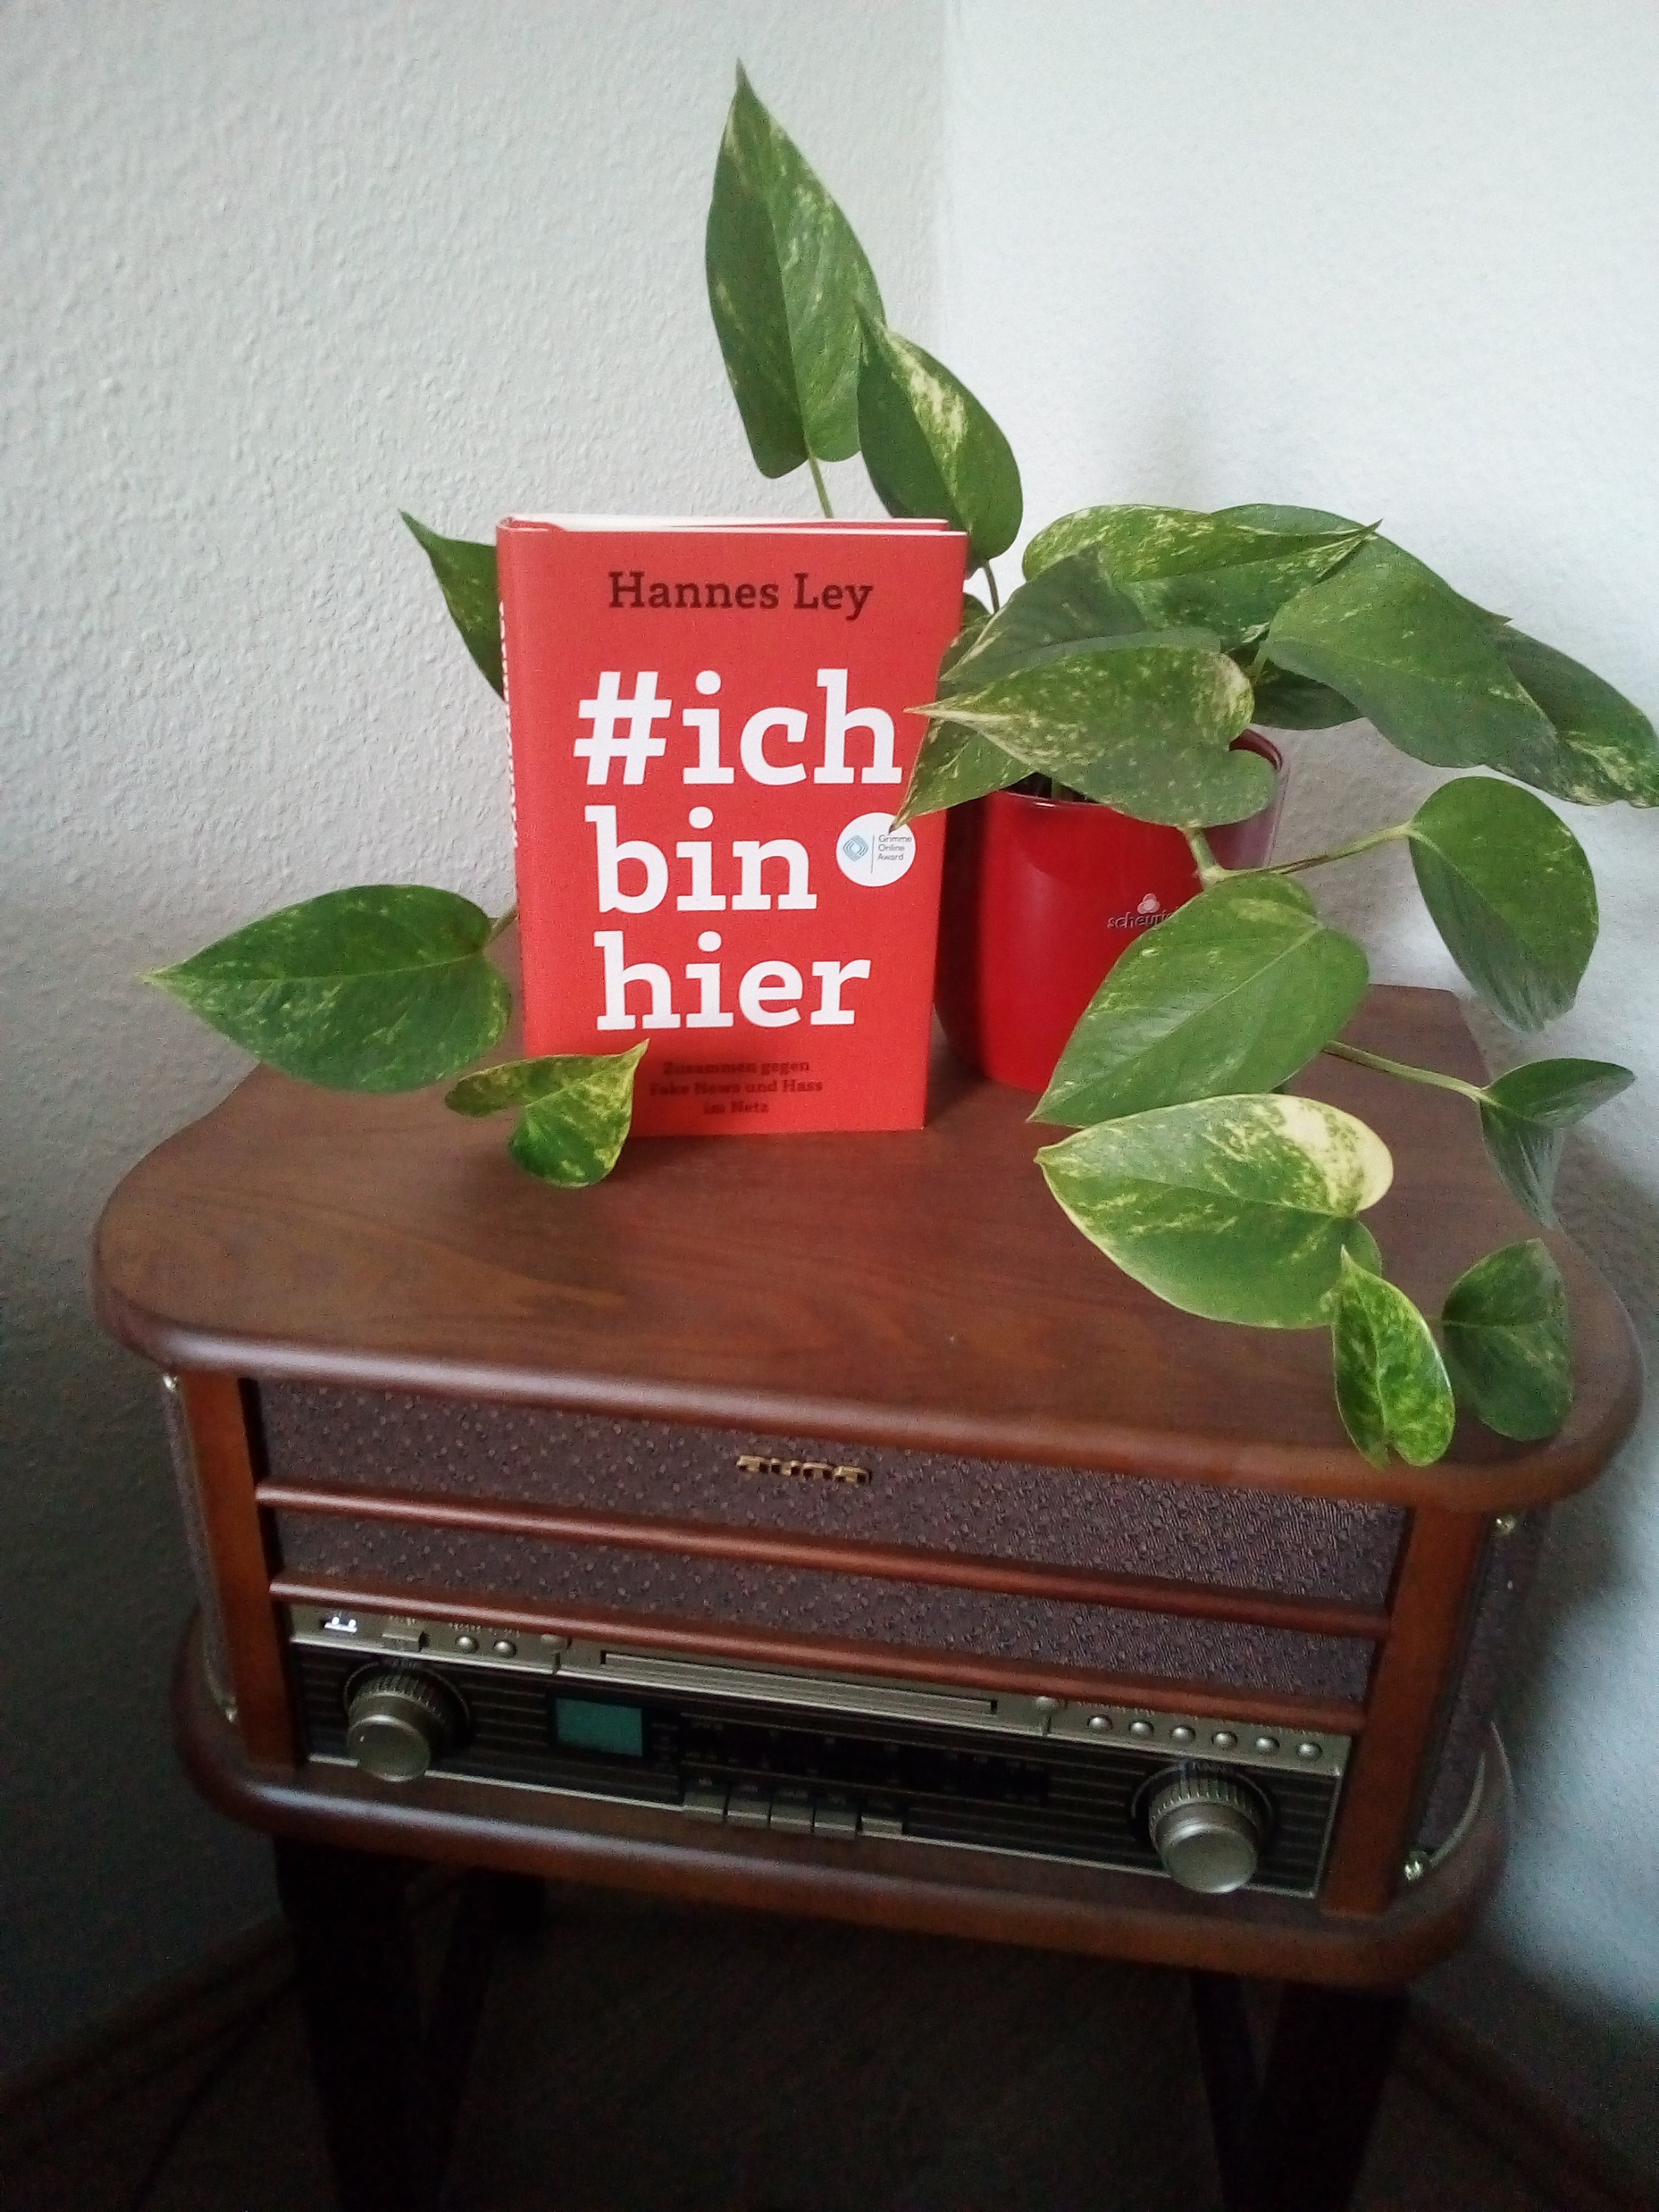 [HateSpeech] #ichbinhier und Handlungstipps fÃ¼r sichere Diskussion im Netz